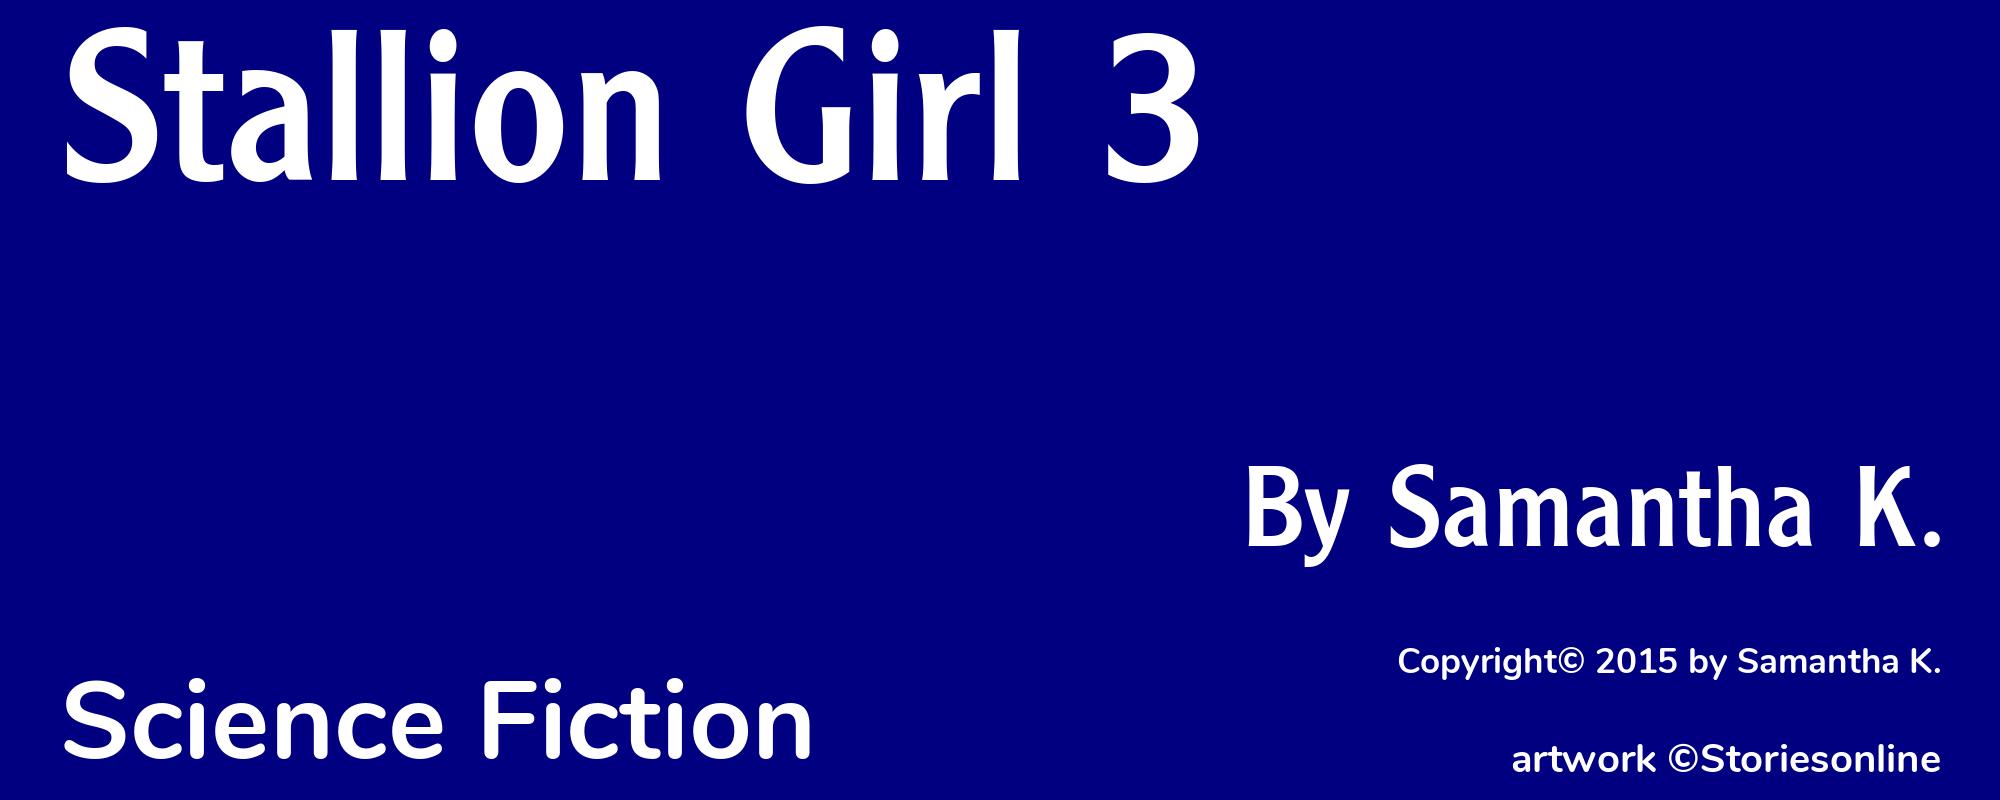 Stallion Girl 3 - Cover